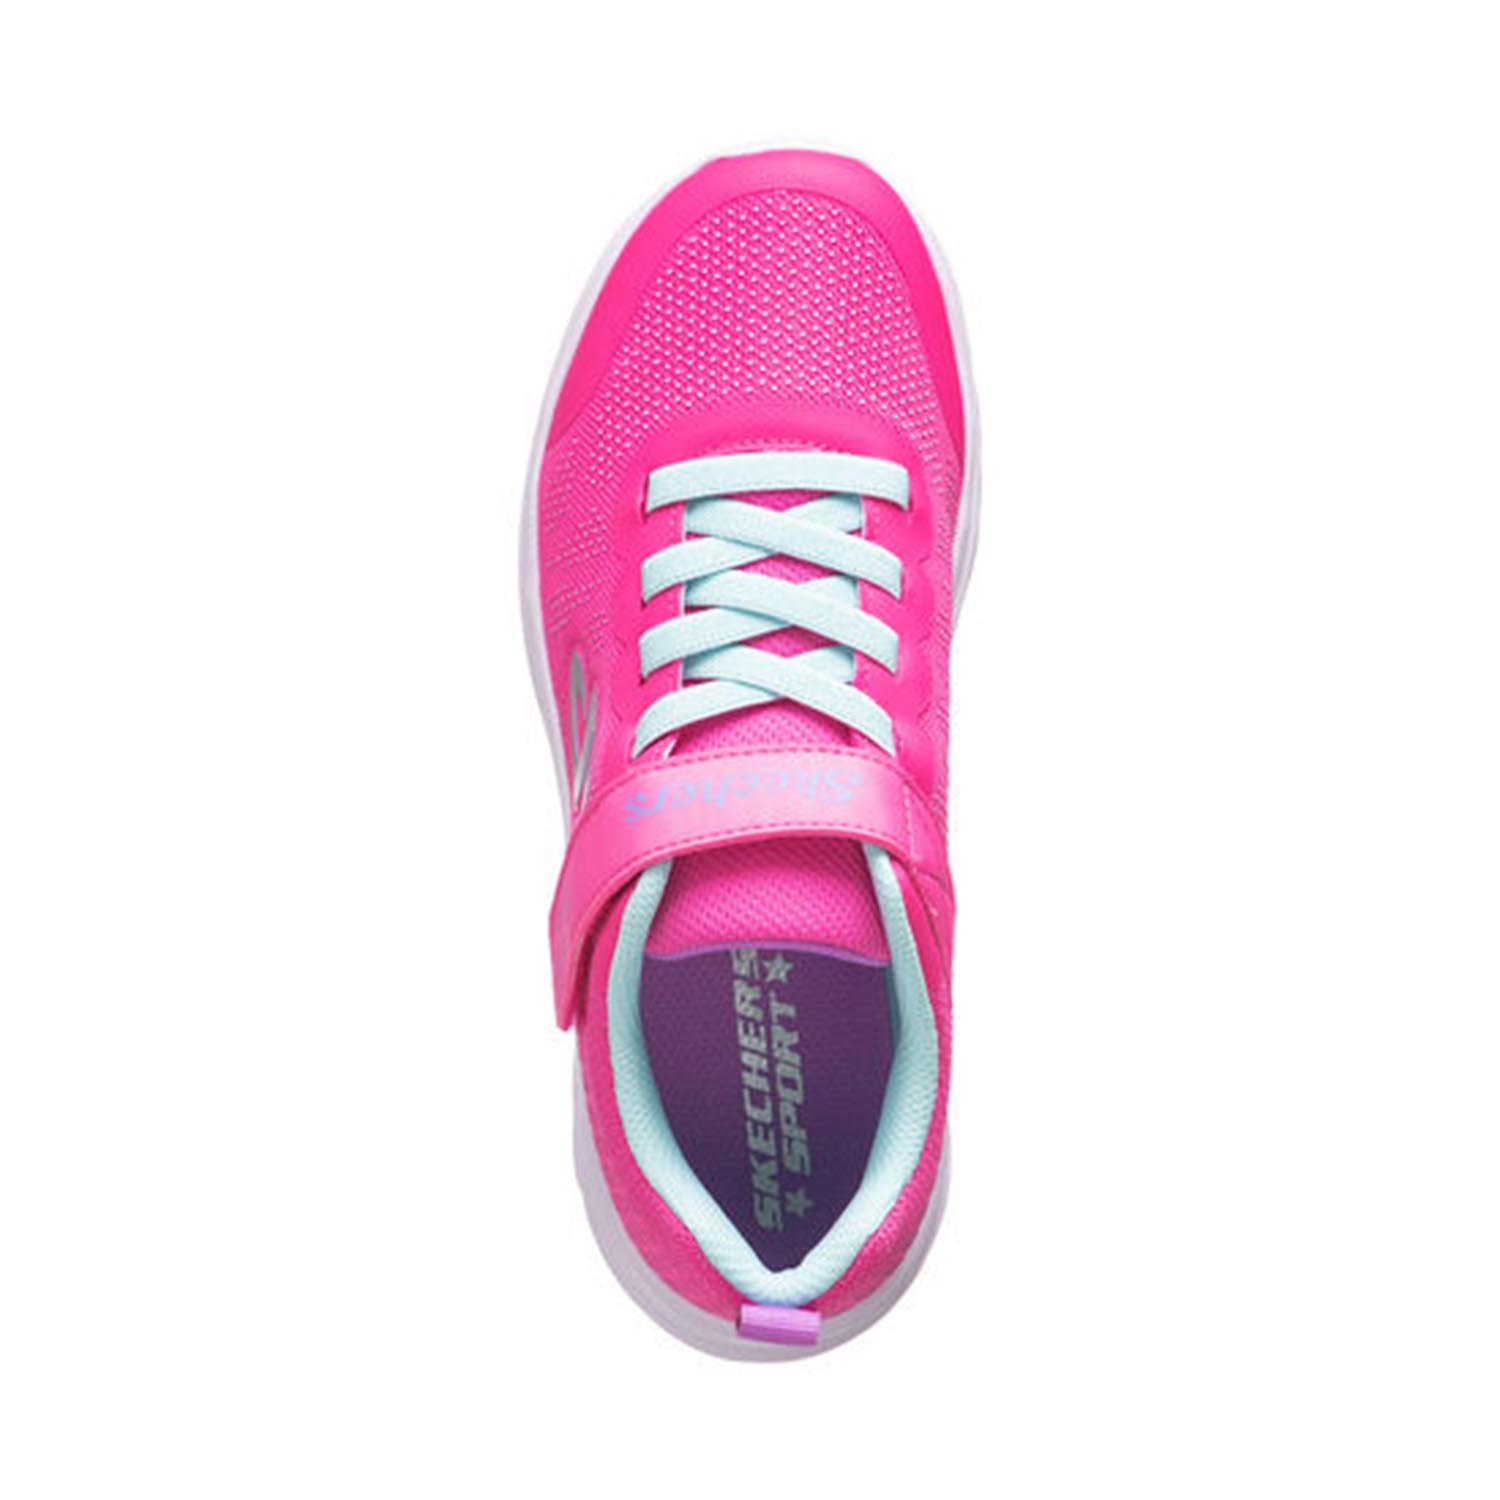 Skechers Kinder Dreamy Dancer - RADIANT ROGUE Mädchen Sneaker 302448L Pink